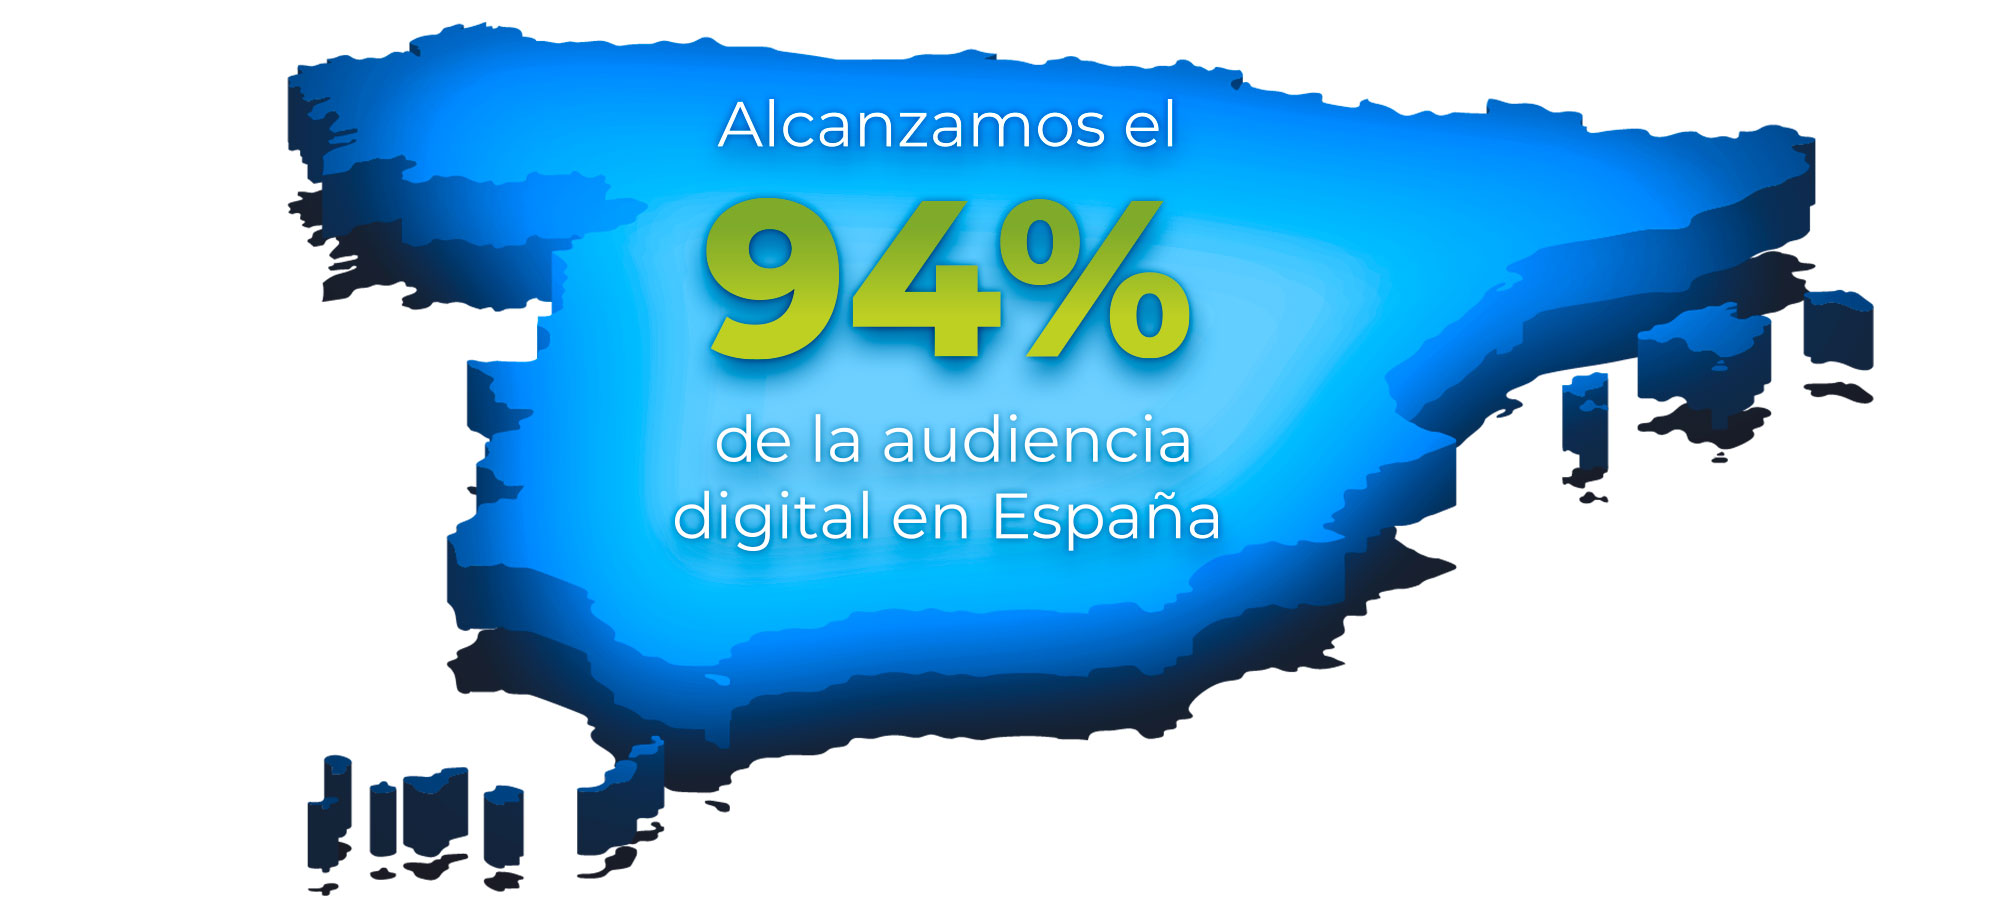 Alcanzamos el 94% de la audiencia digital de España